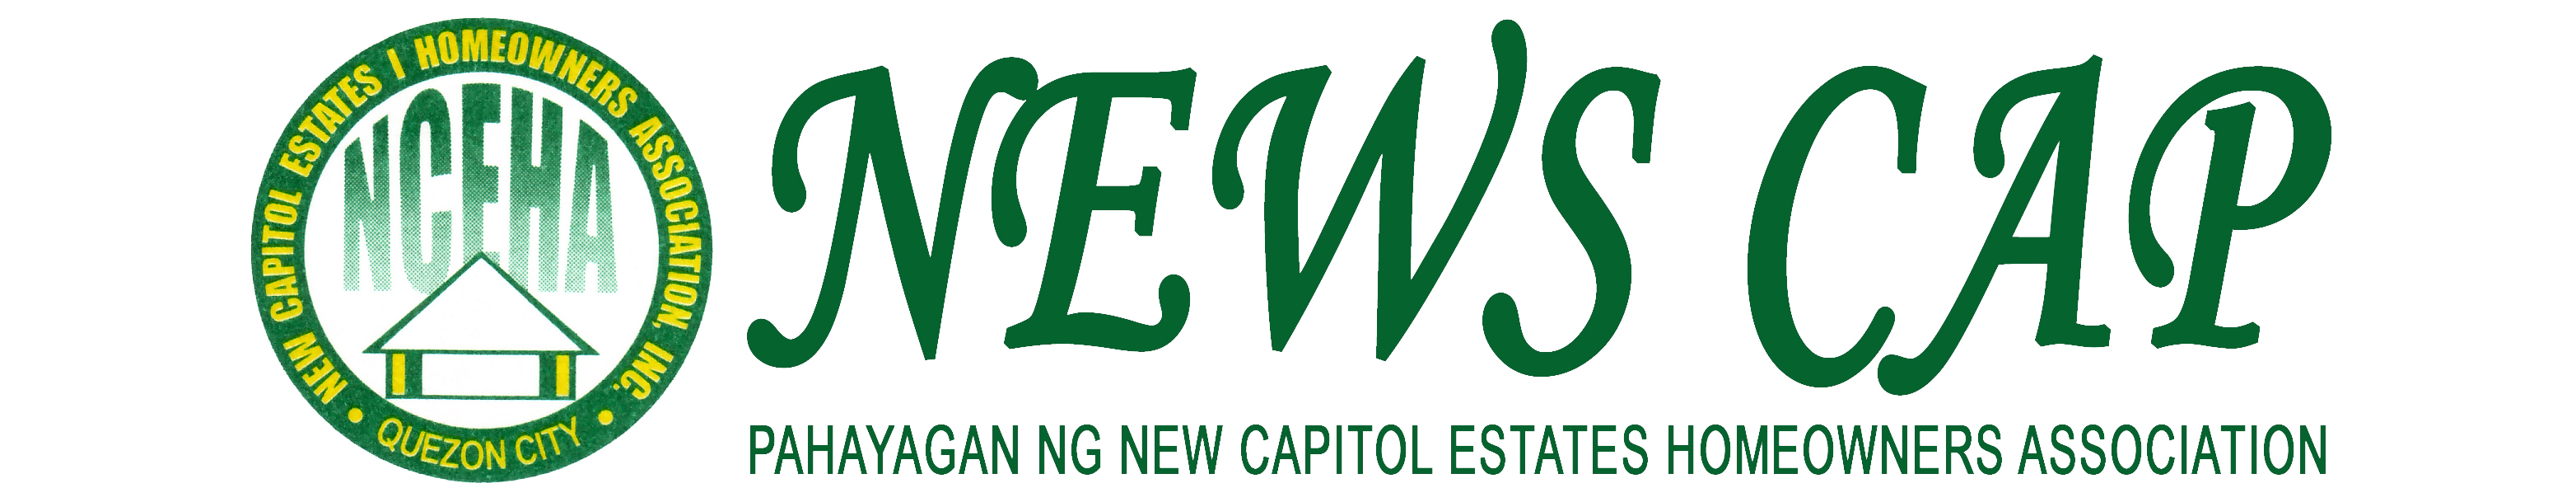 New Capitol Estates News Cap